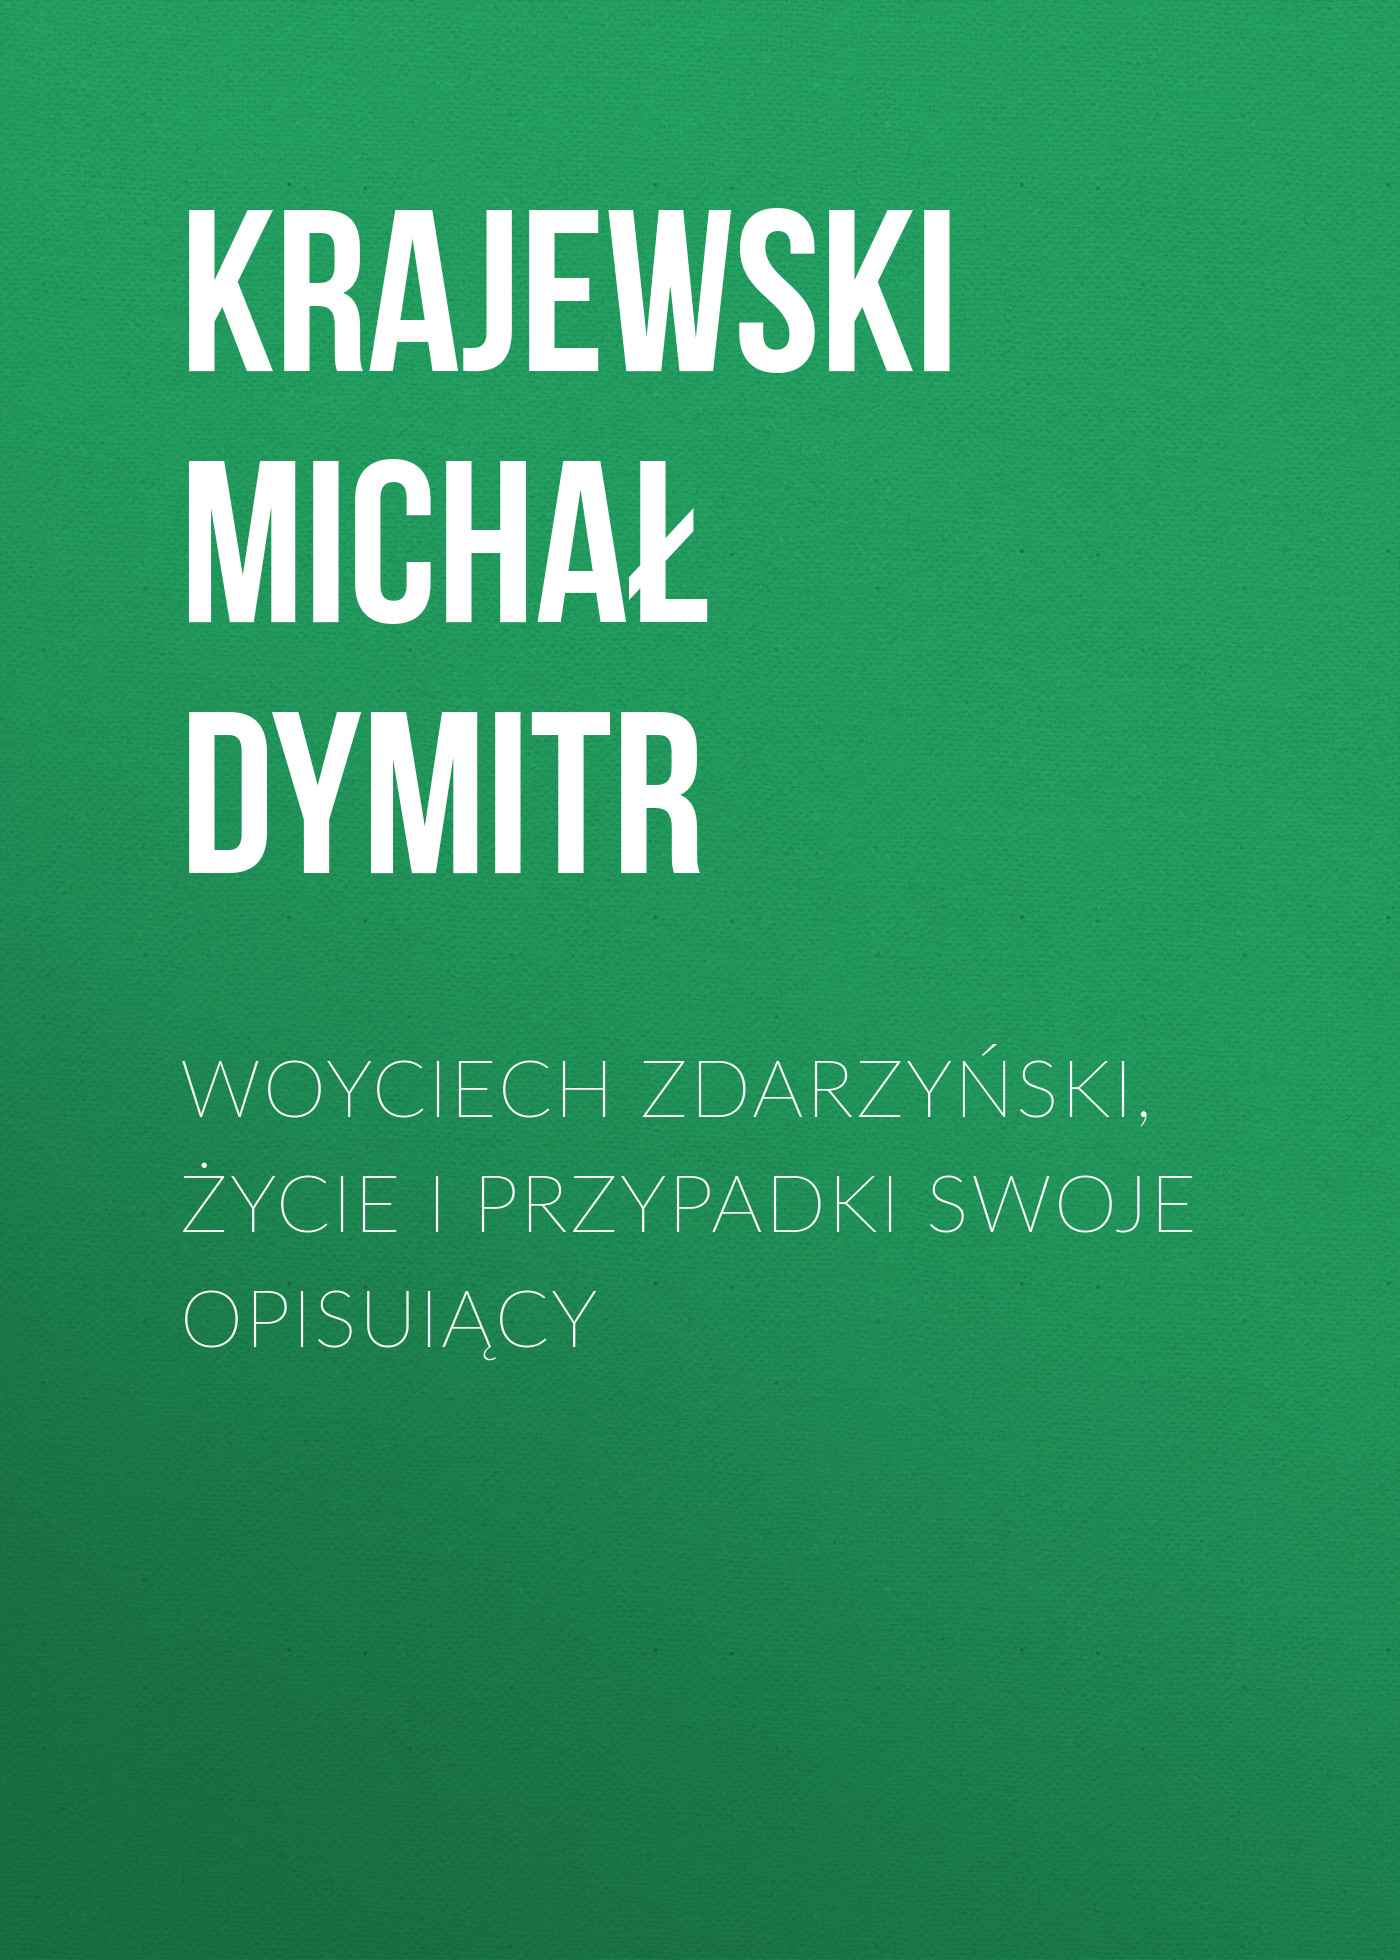 Скачать Woyciech Zdarzyński, życie i przypadki swoje opisuiący - Krajewski Michał Dymitr